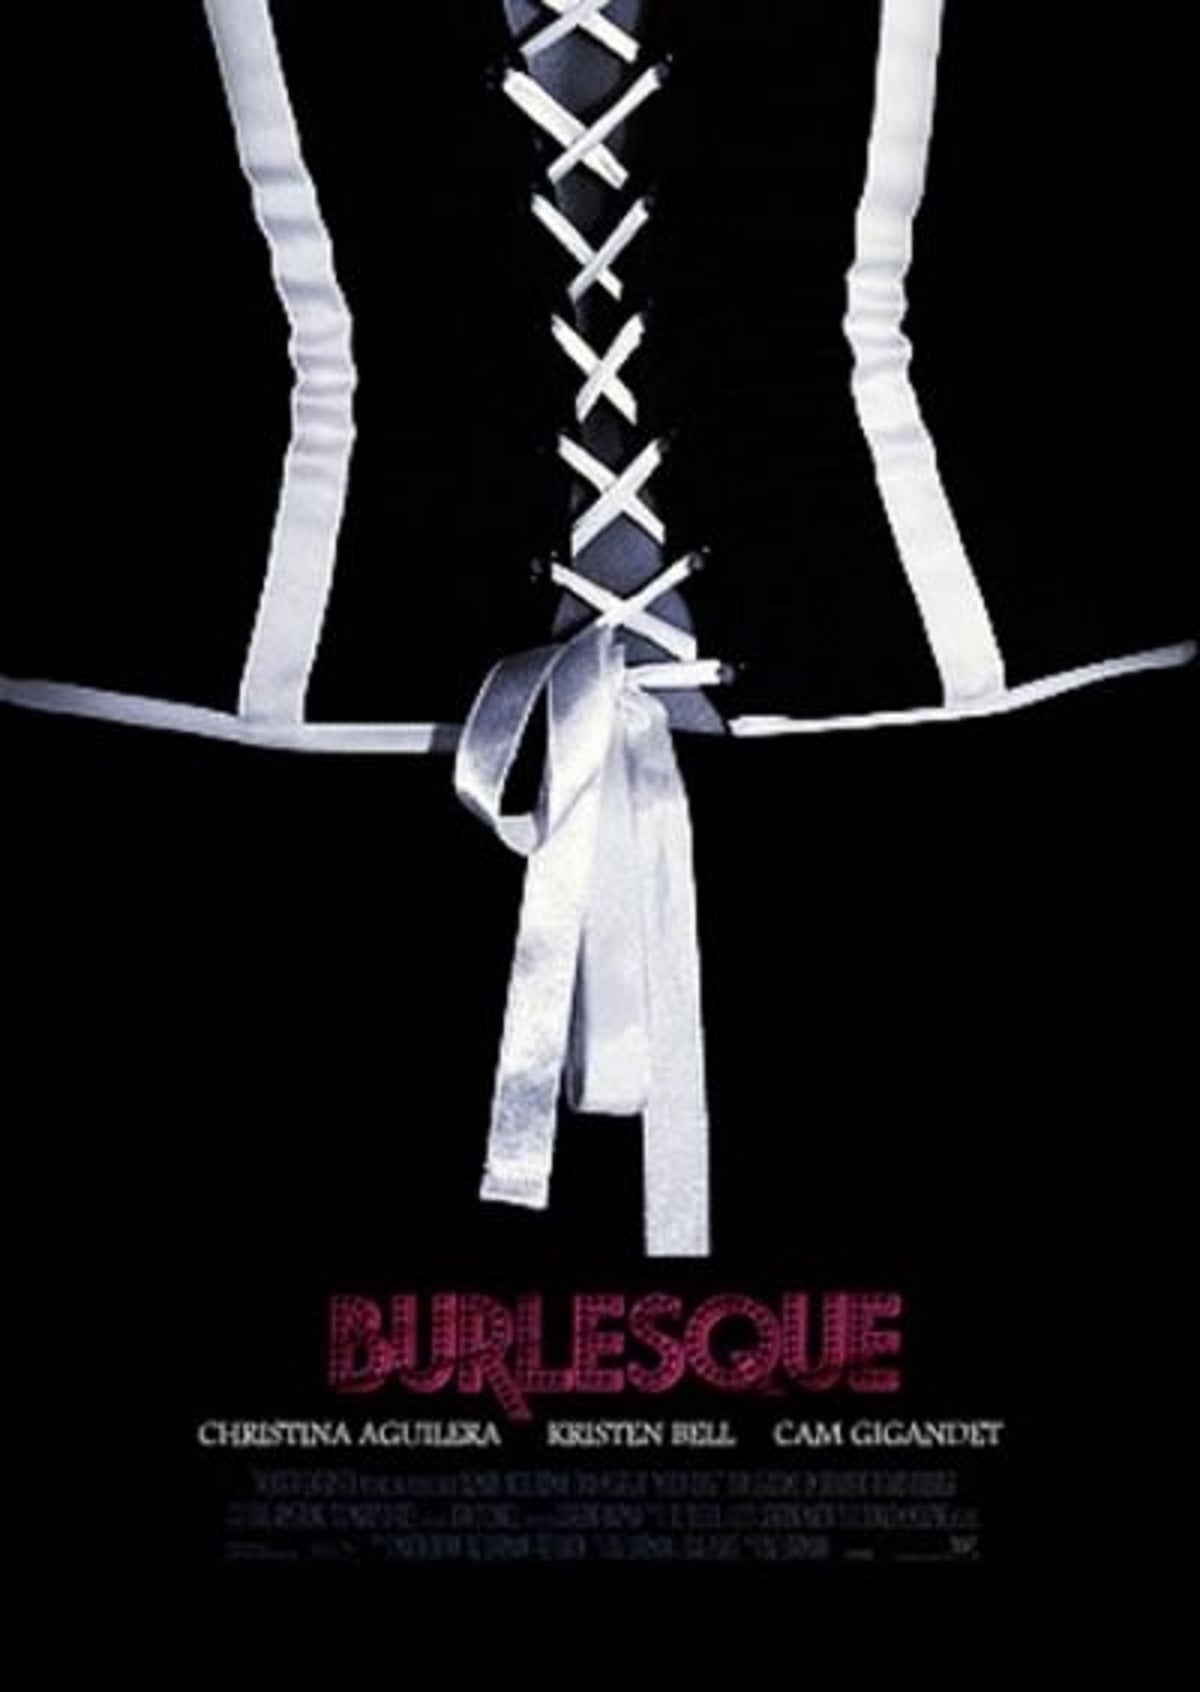 Burlesque (Film)